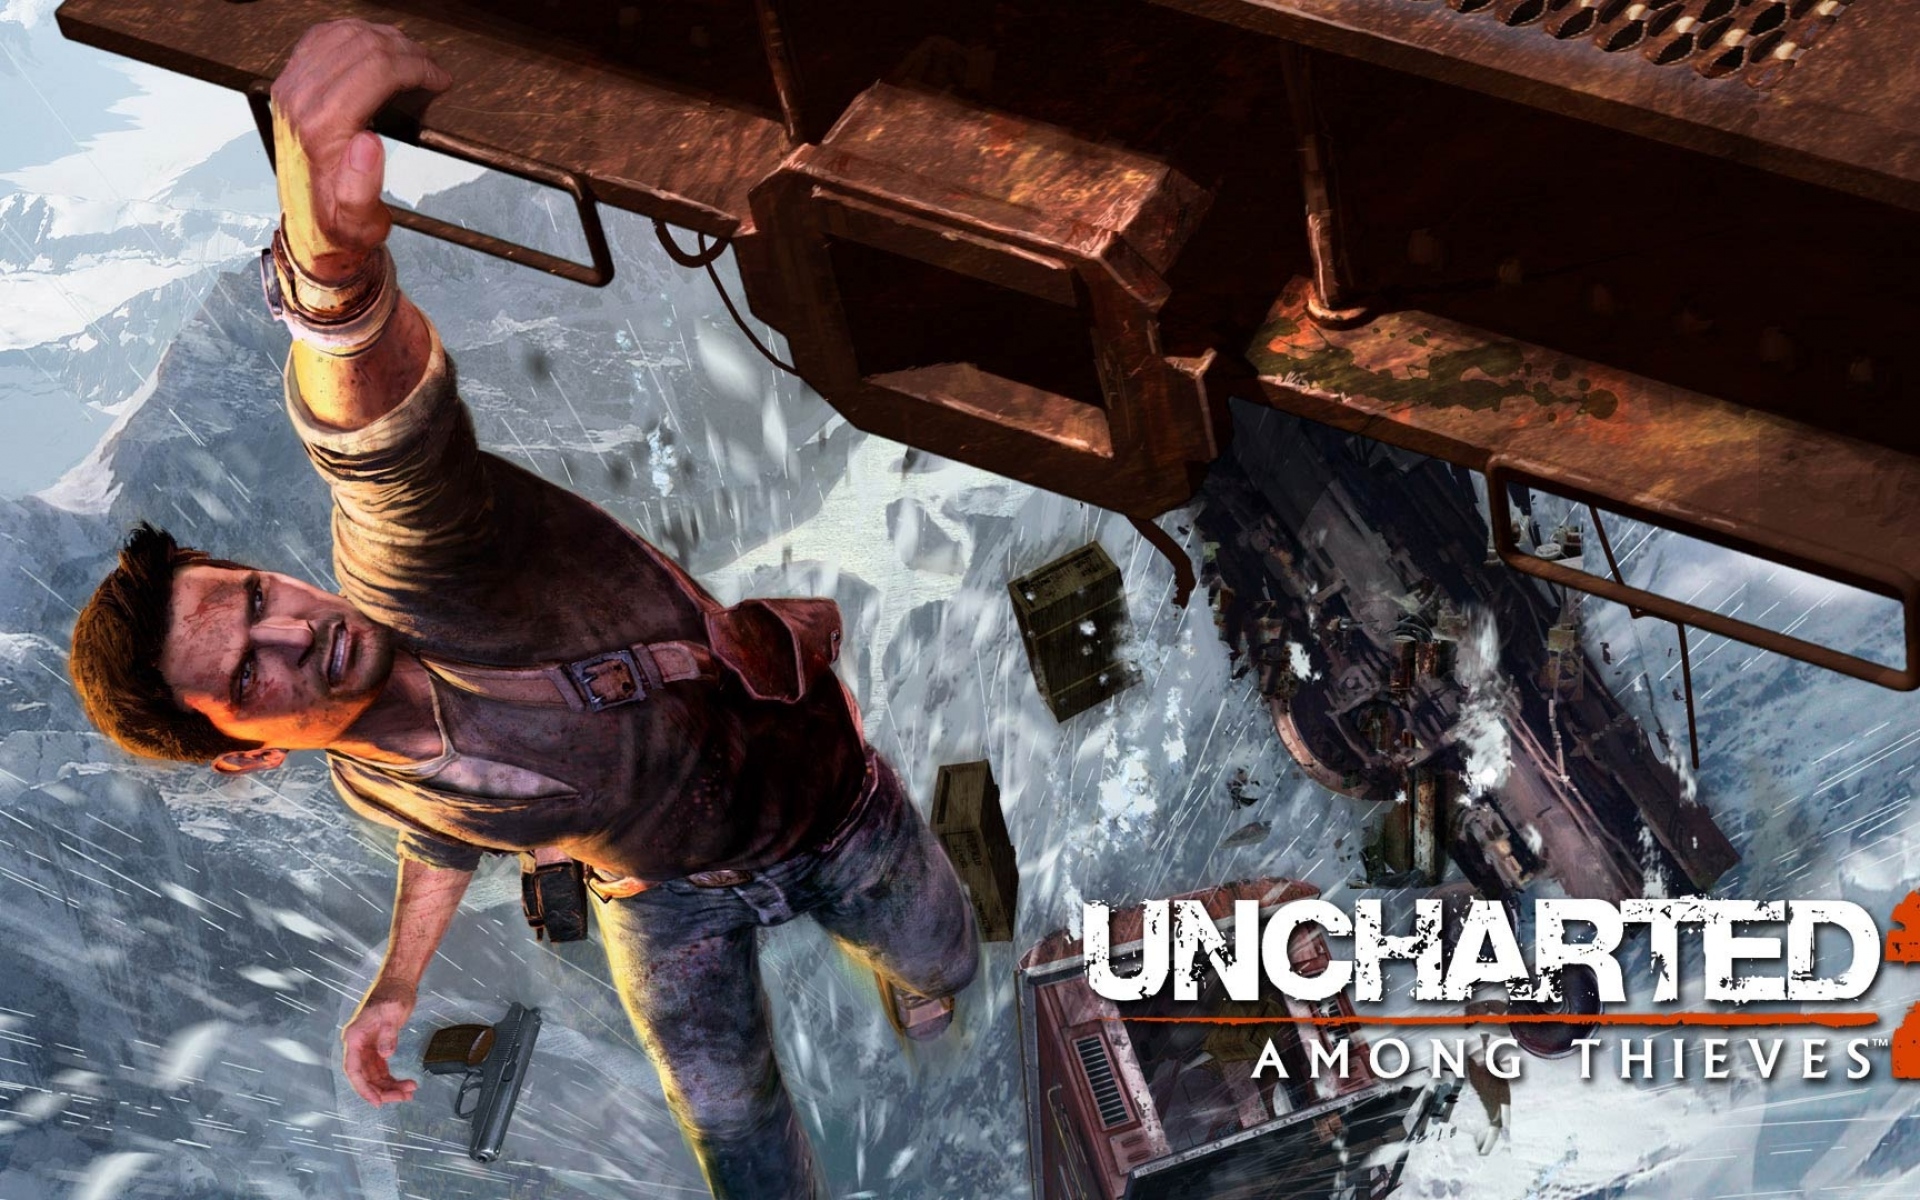 Картинки Uncharted 2 среди воров, высота, человек, пистолет, снег фото и обои на рабочий стол